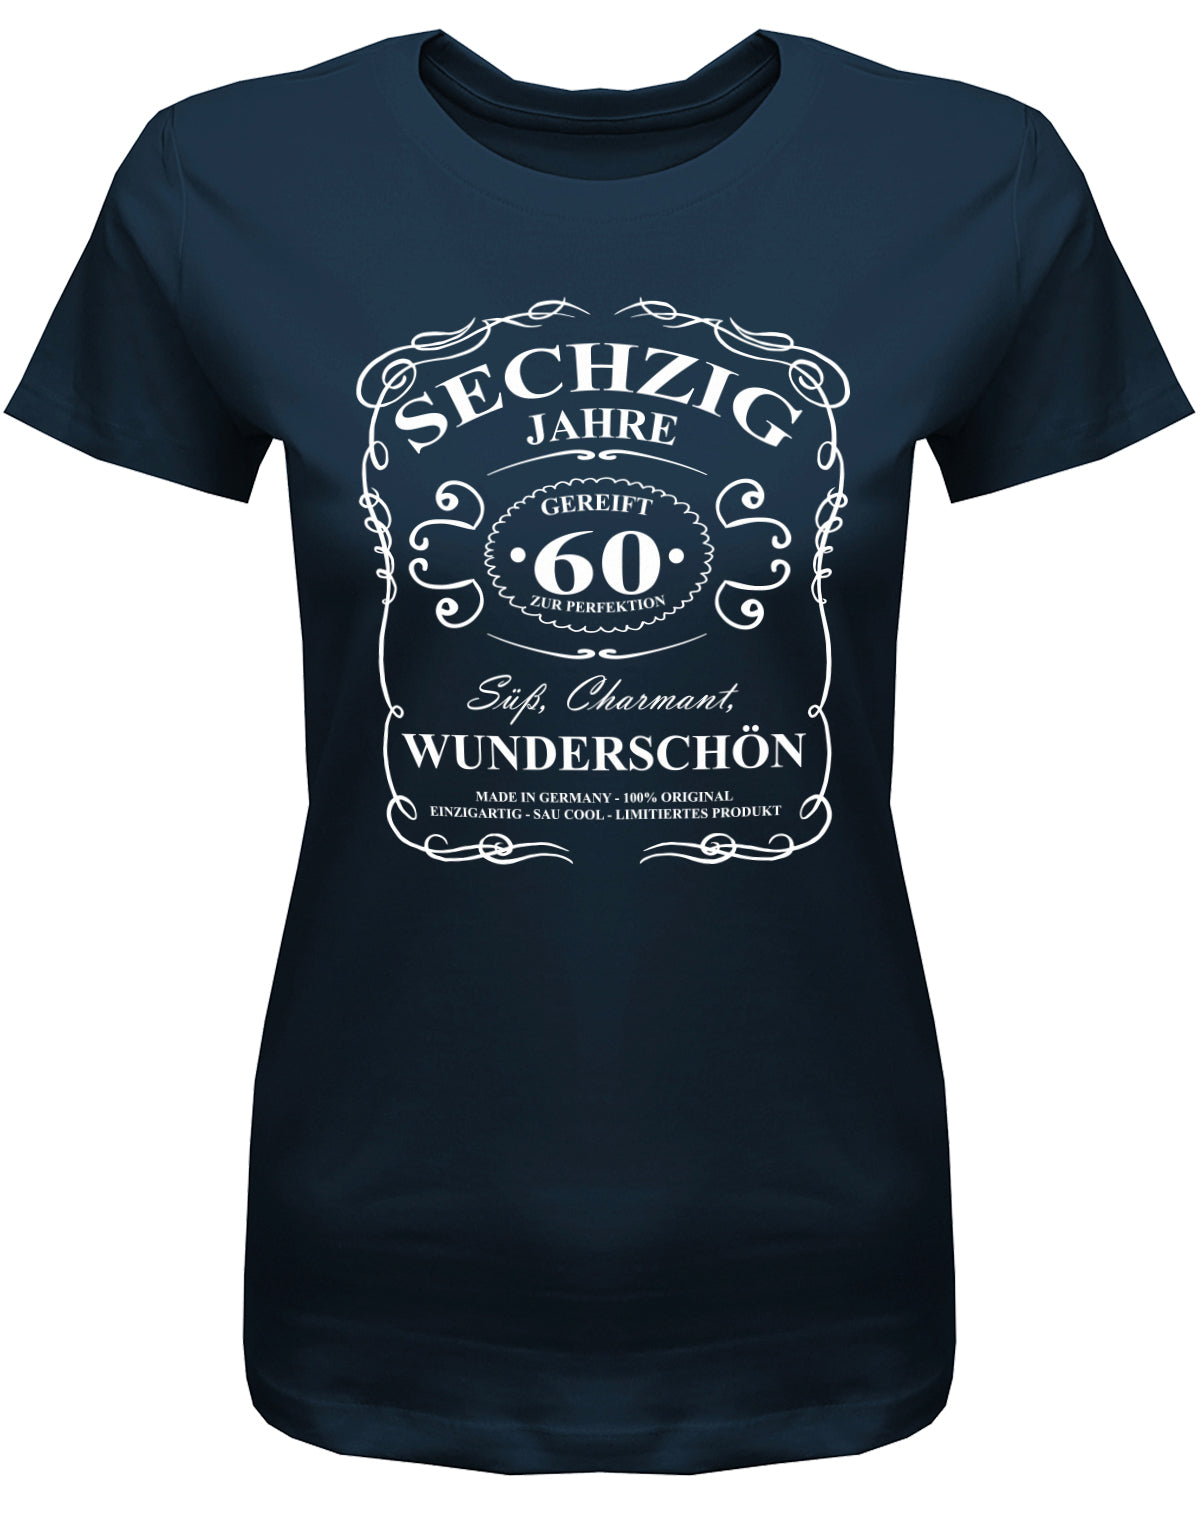 60 Jahre gereift zur Perfektion - Süß Charmant Wunderschön - 60 Geburtstag Shirt Frau